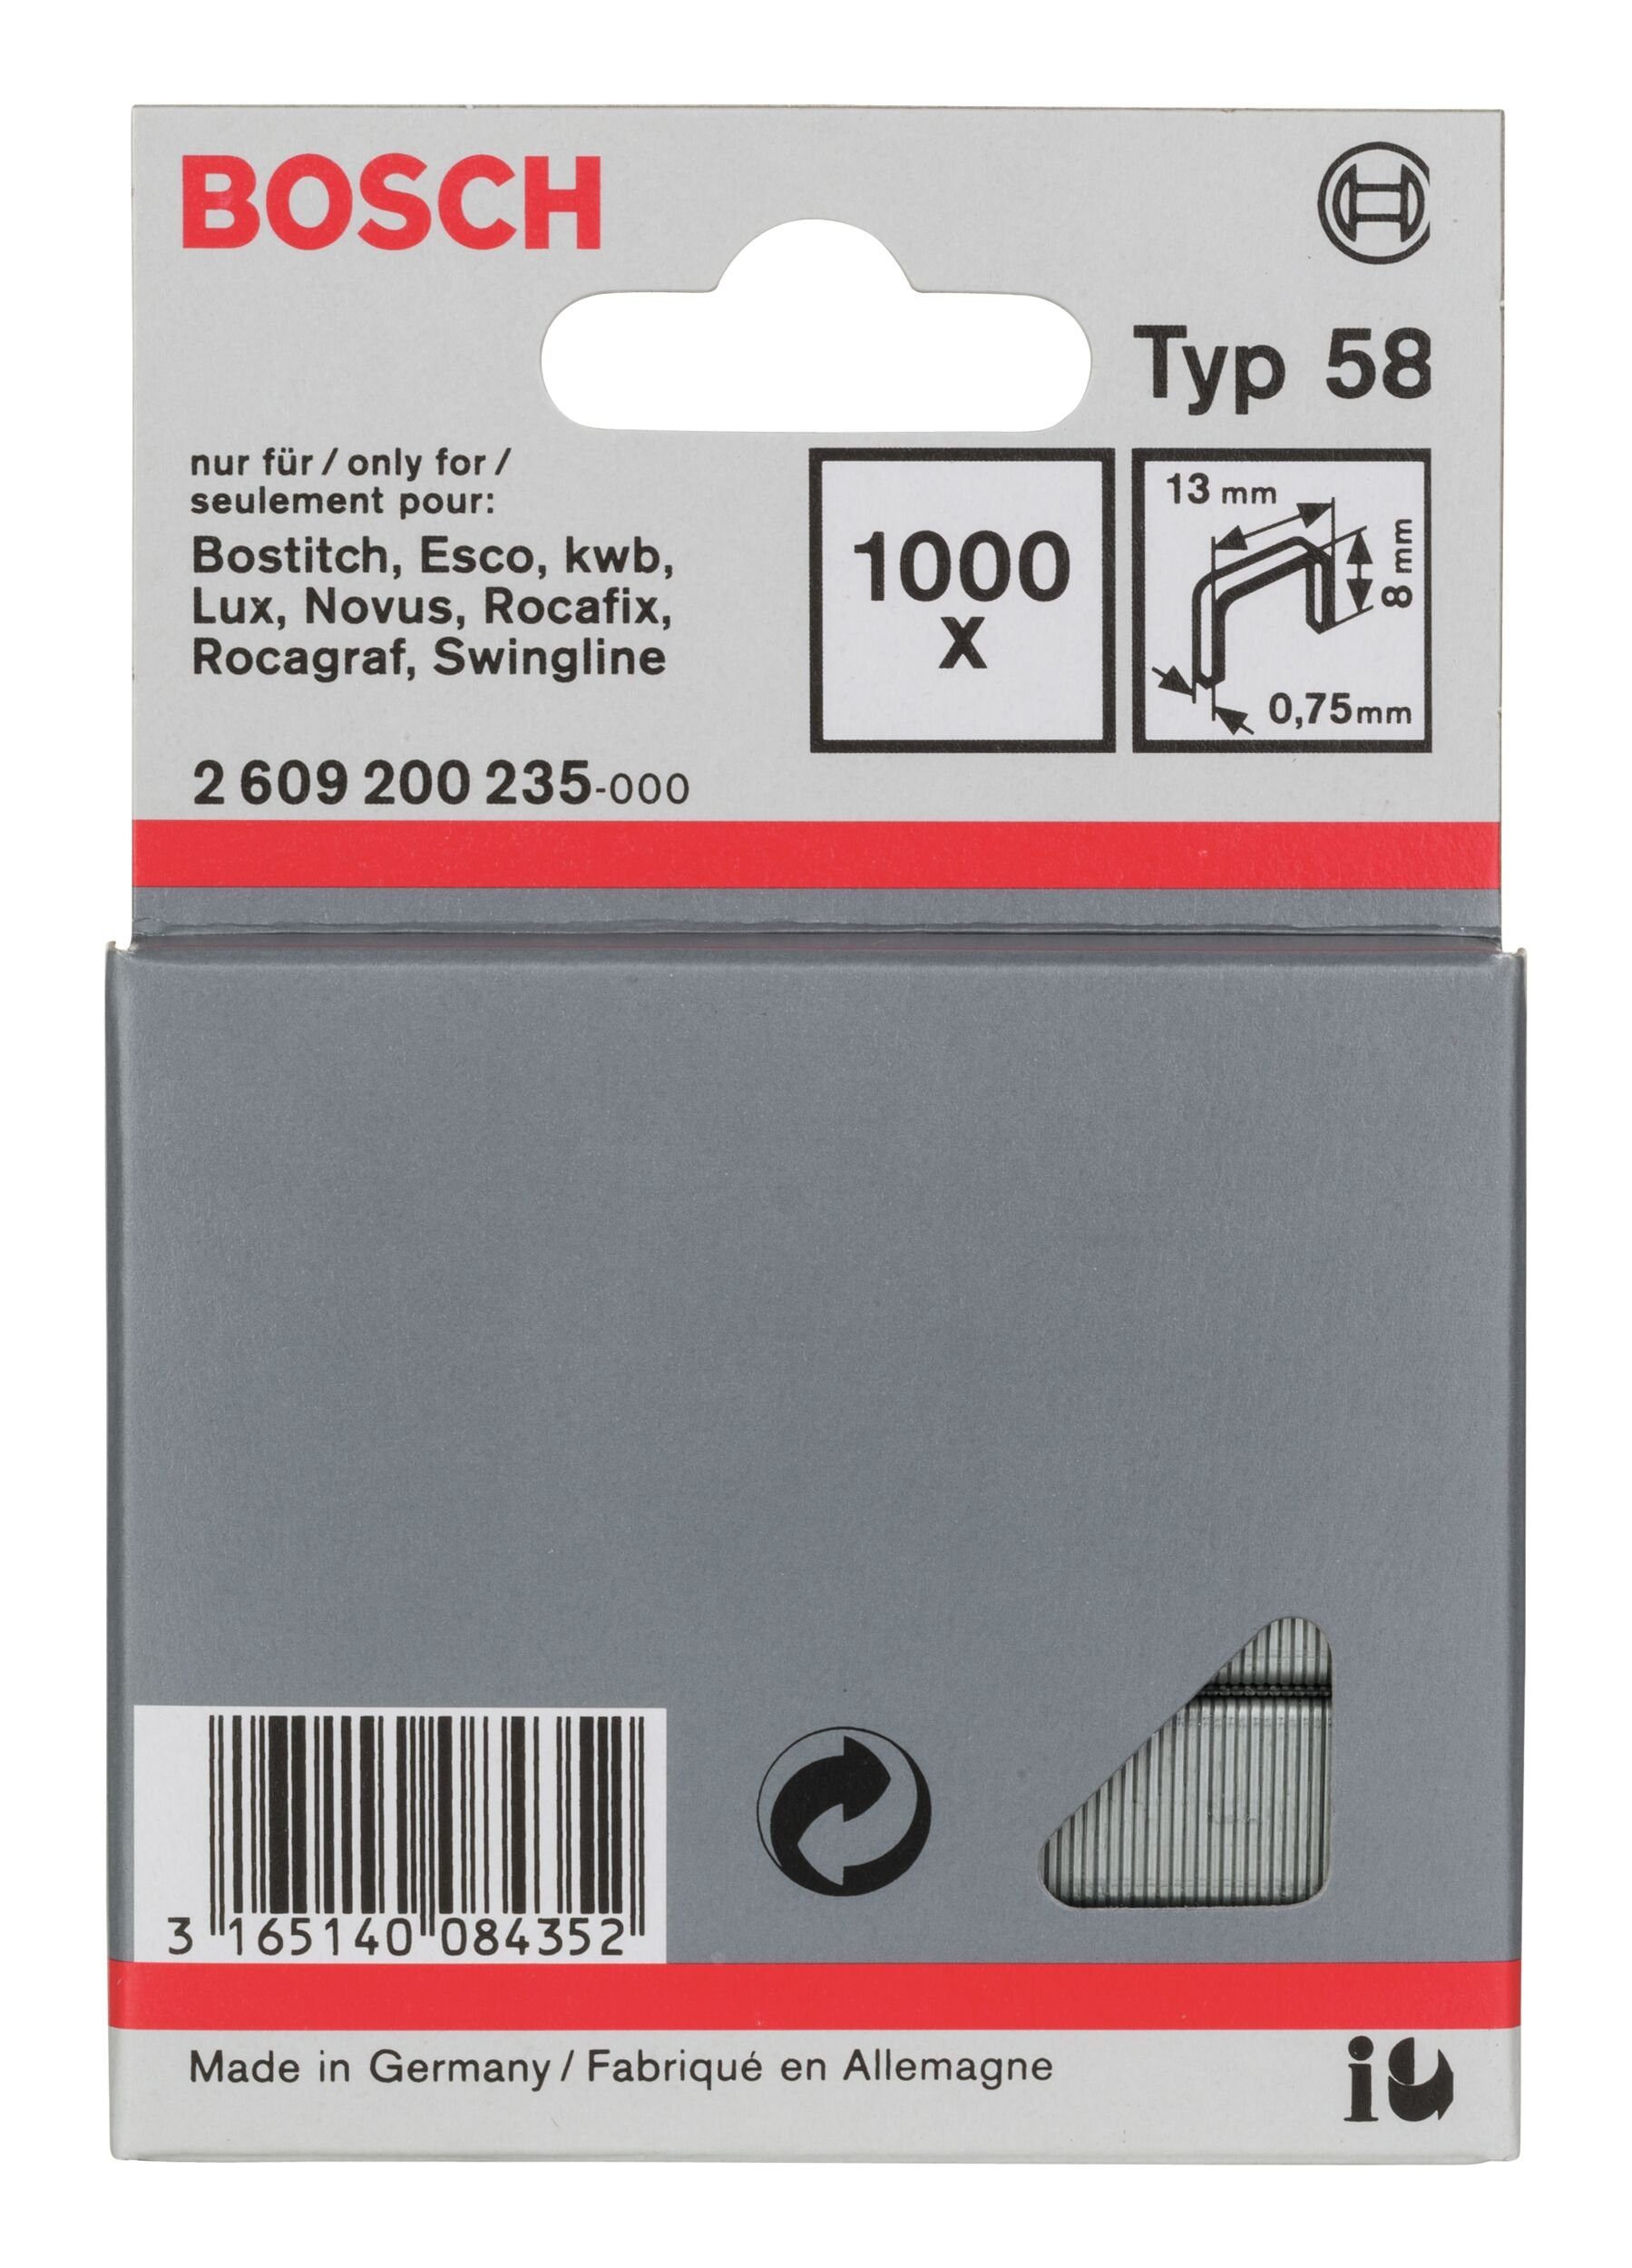 BOSCH Tackerklammer, Typ 58 Feindrahtklammer - 0,75 x 8 x 13 mm - 1000er-Pack